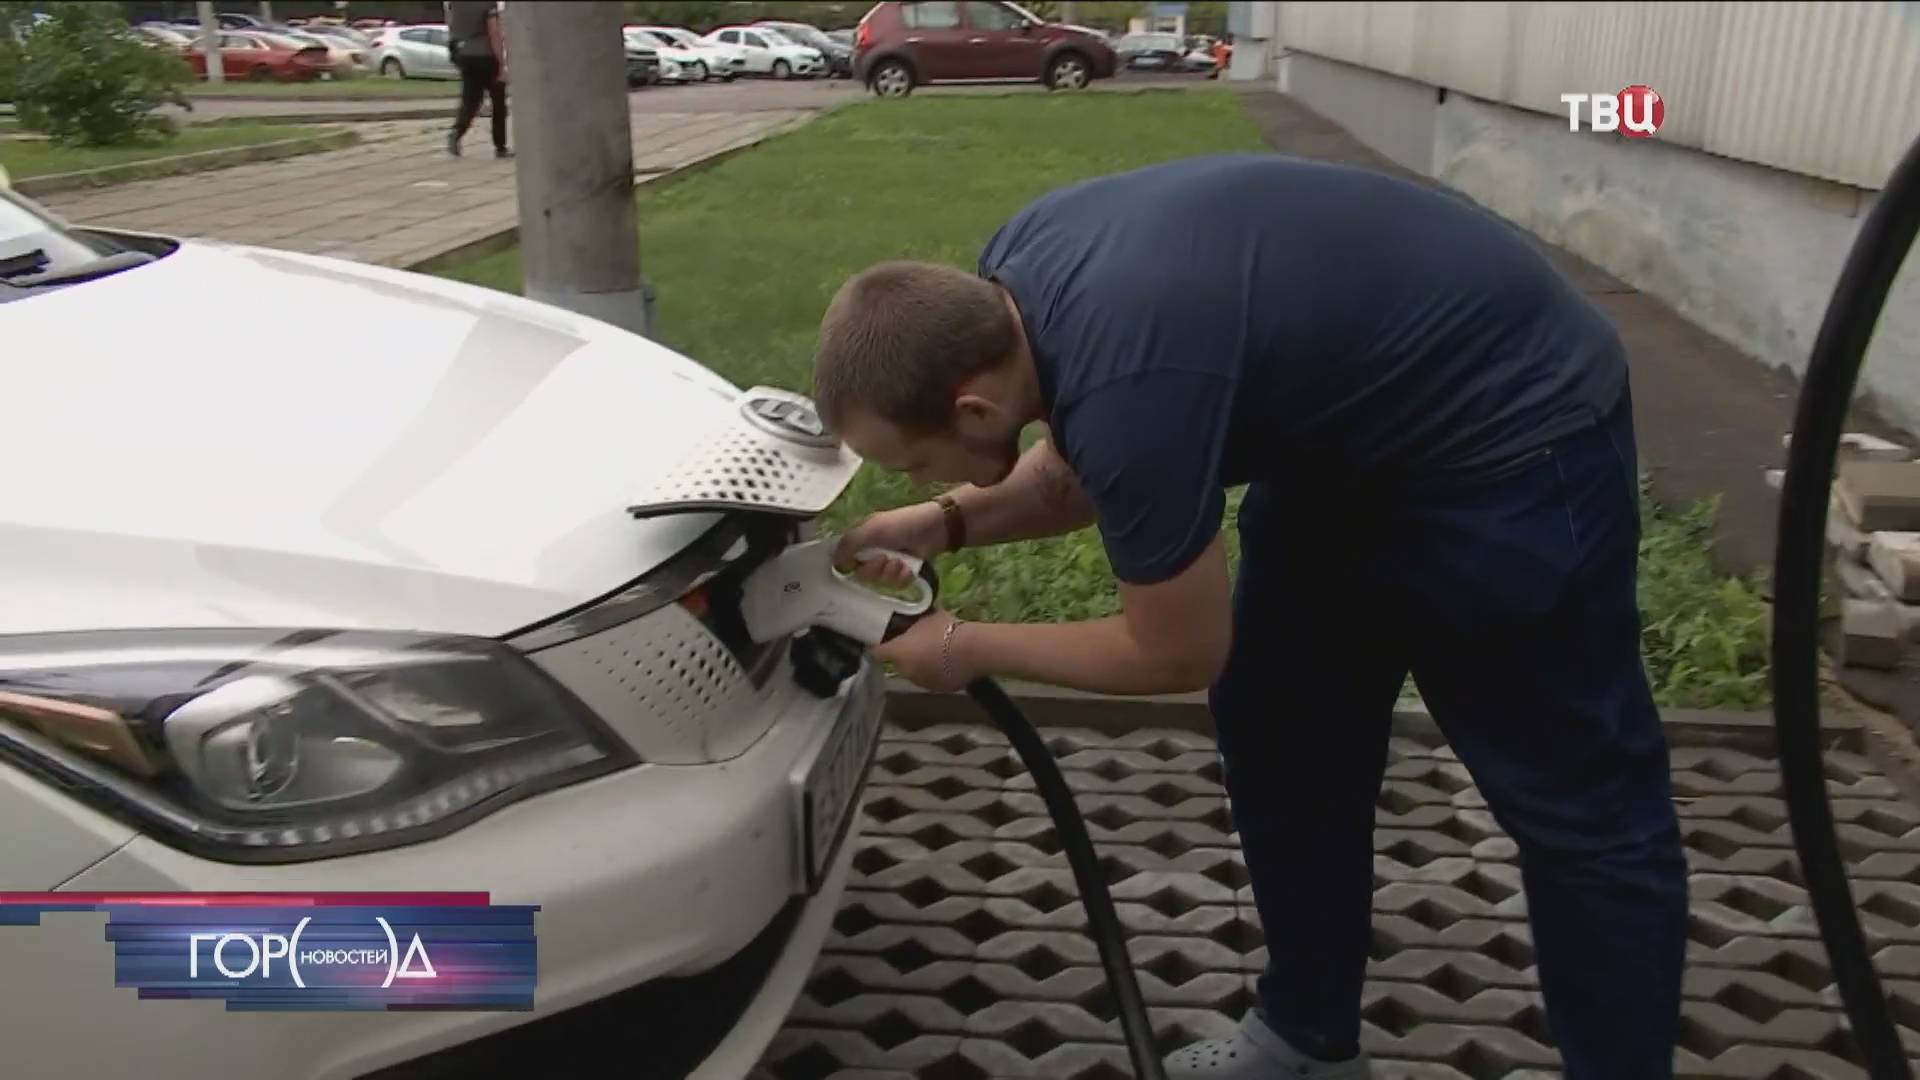 70 новых зарядных станций для электромобилей появится в Москве / Город новостей на ТВЦ